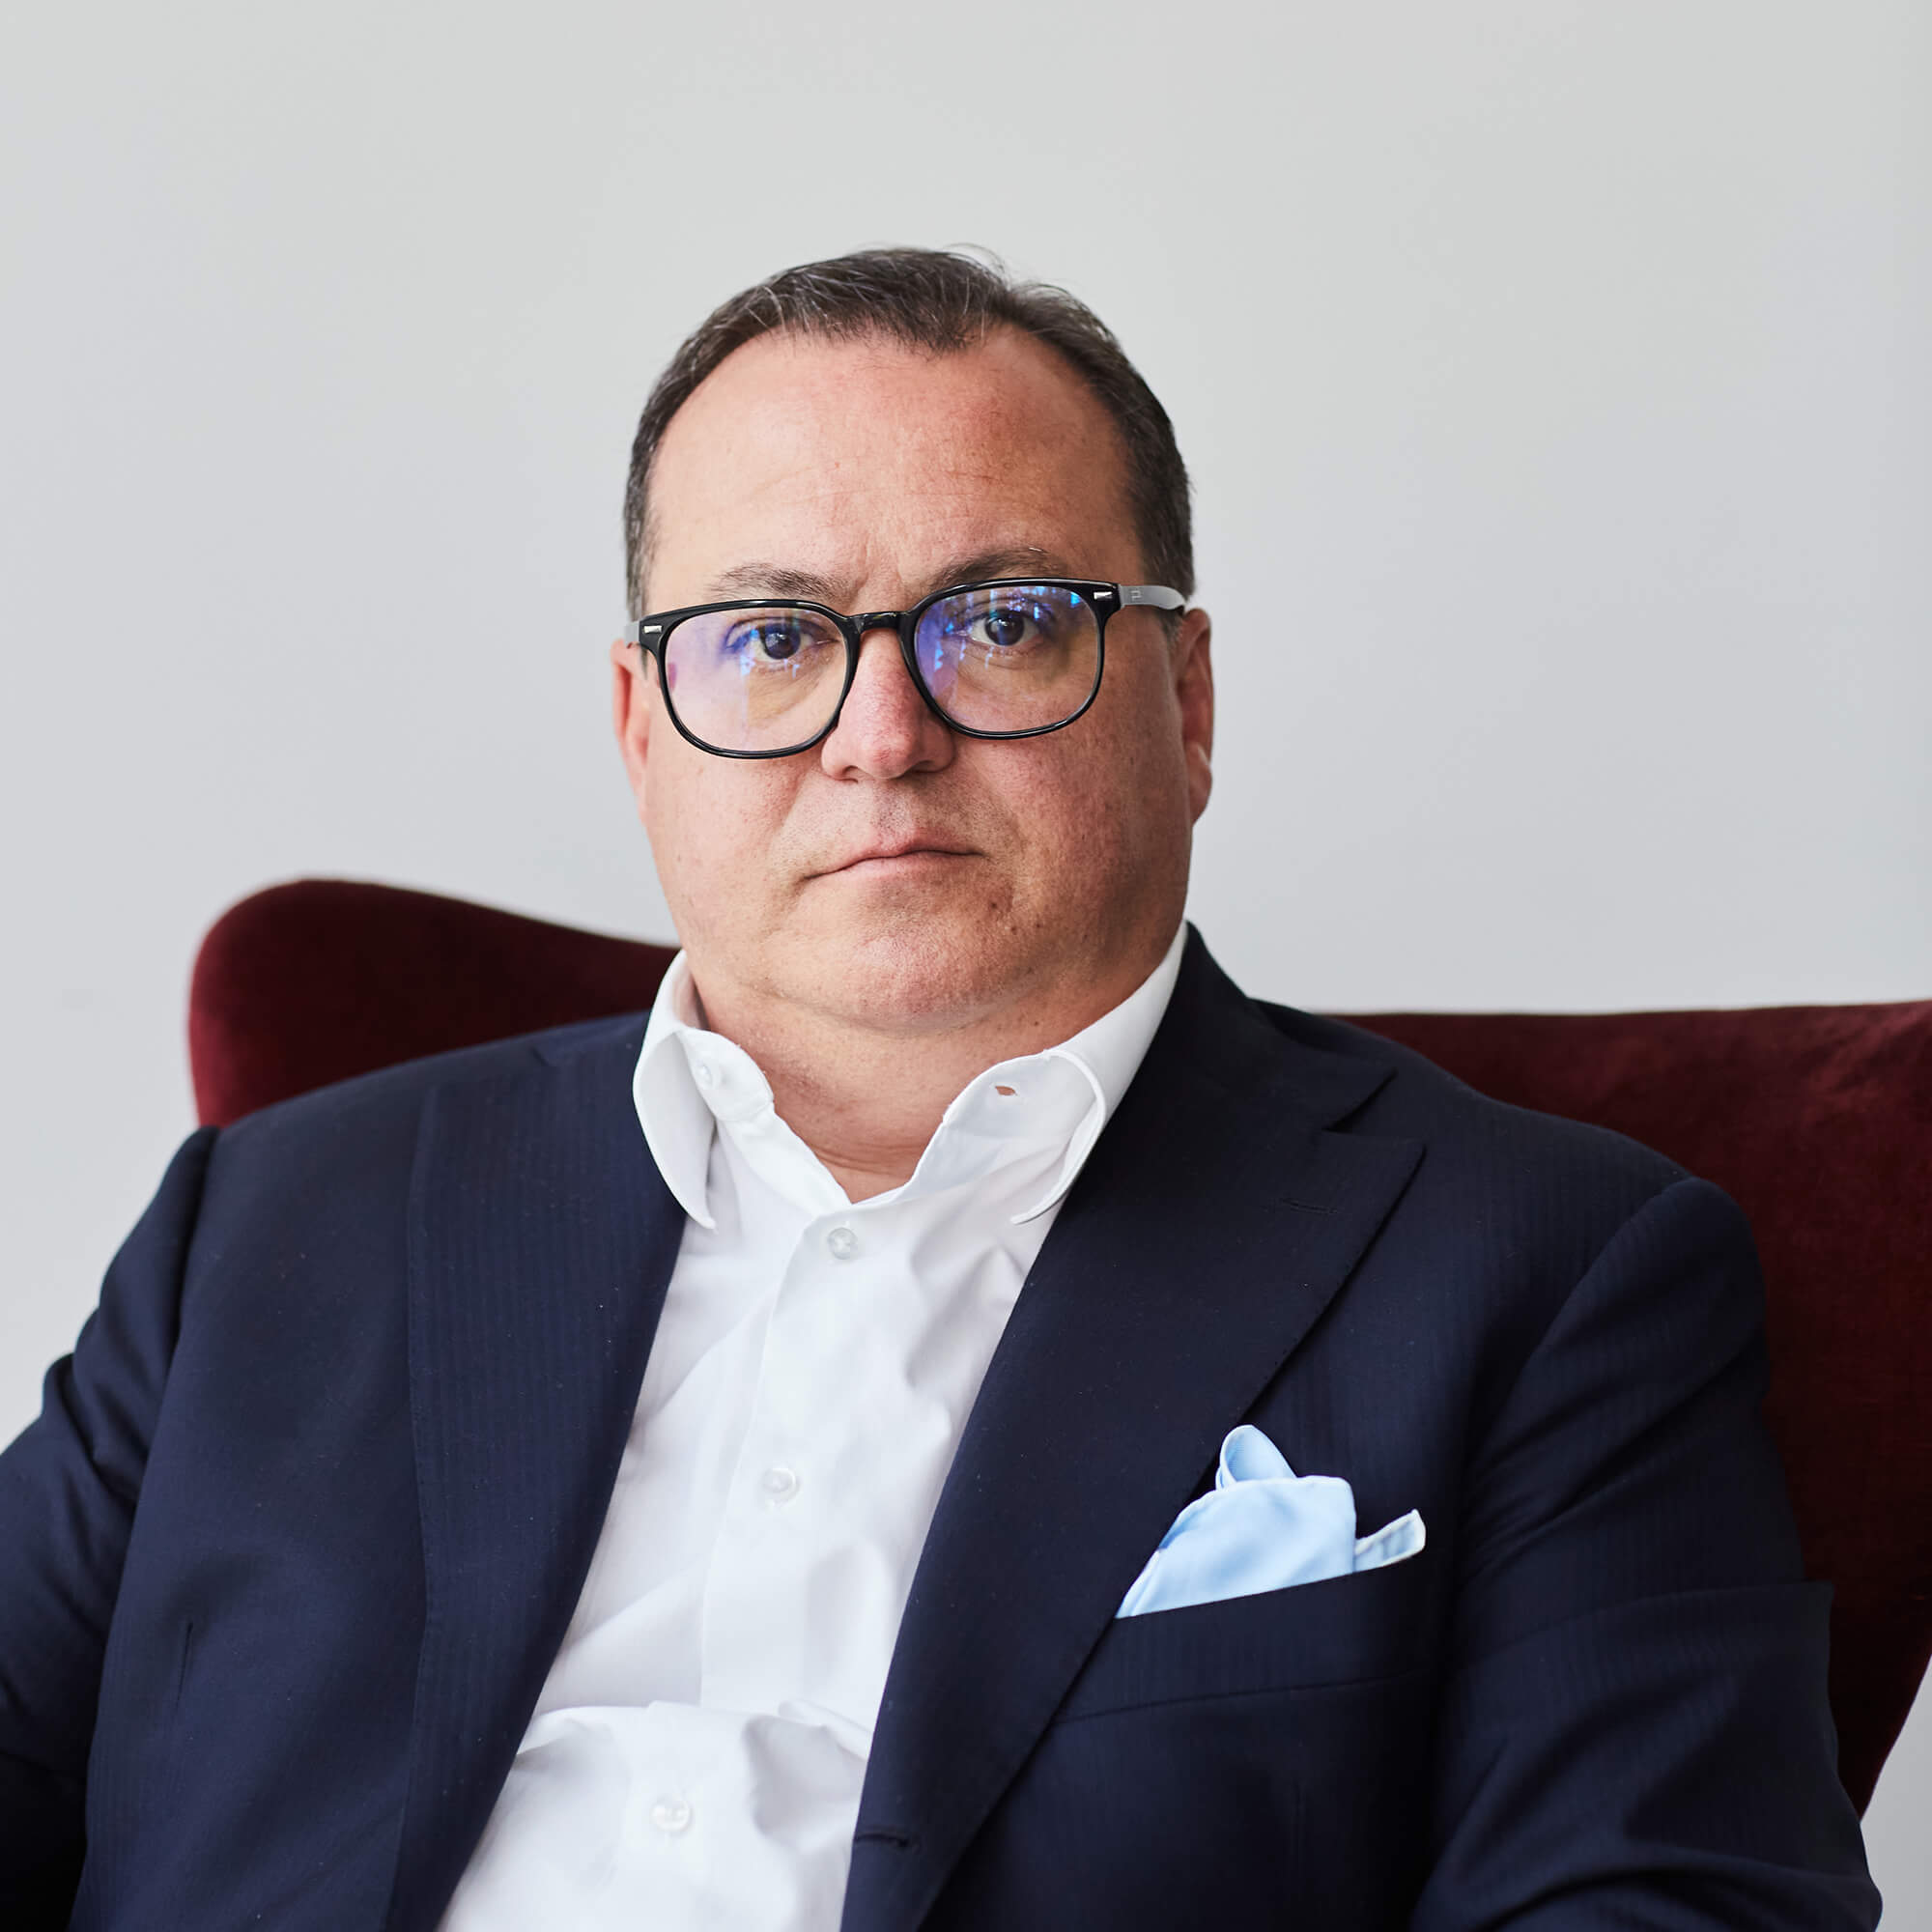 Fabrizio Zago - Group CEO